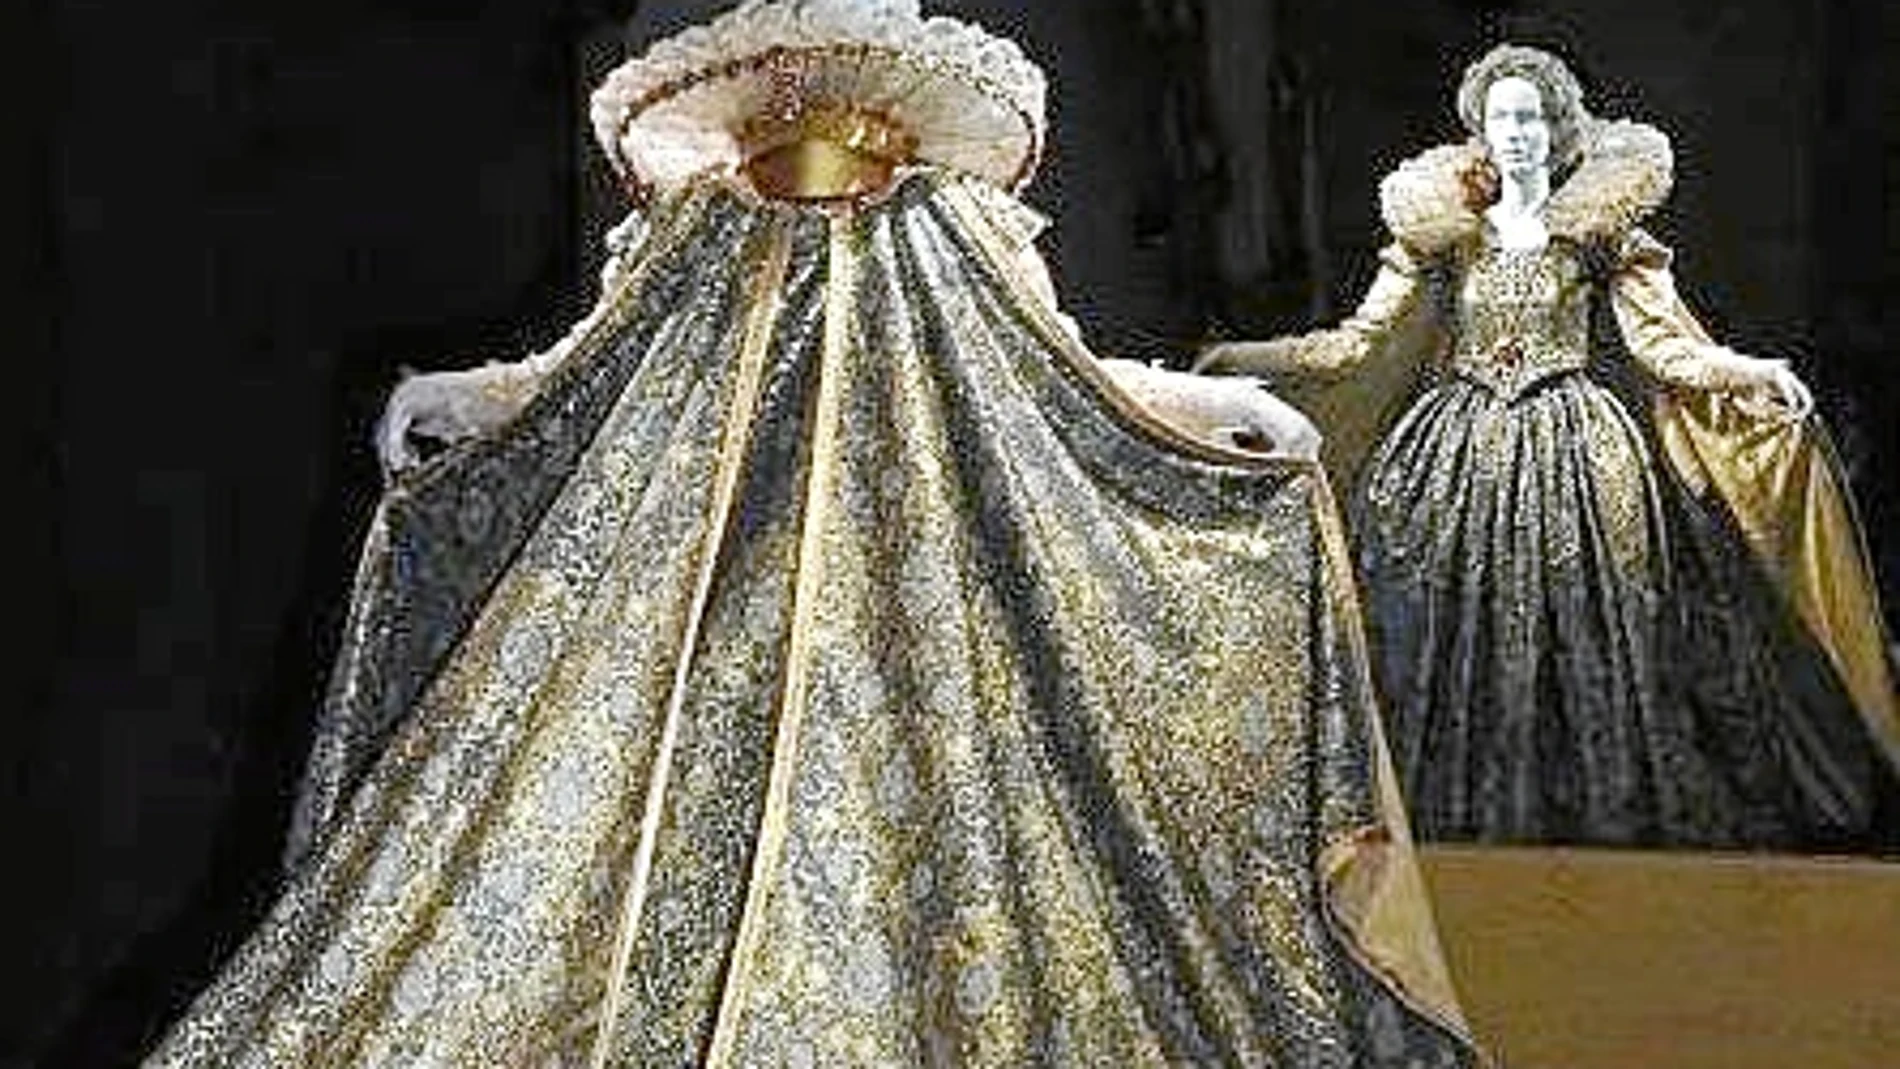 La exposición recoge 30 piezas únicas de reproducciones de valiosos trajes del Renacimiento italiano